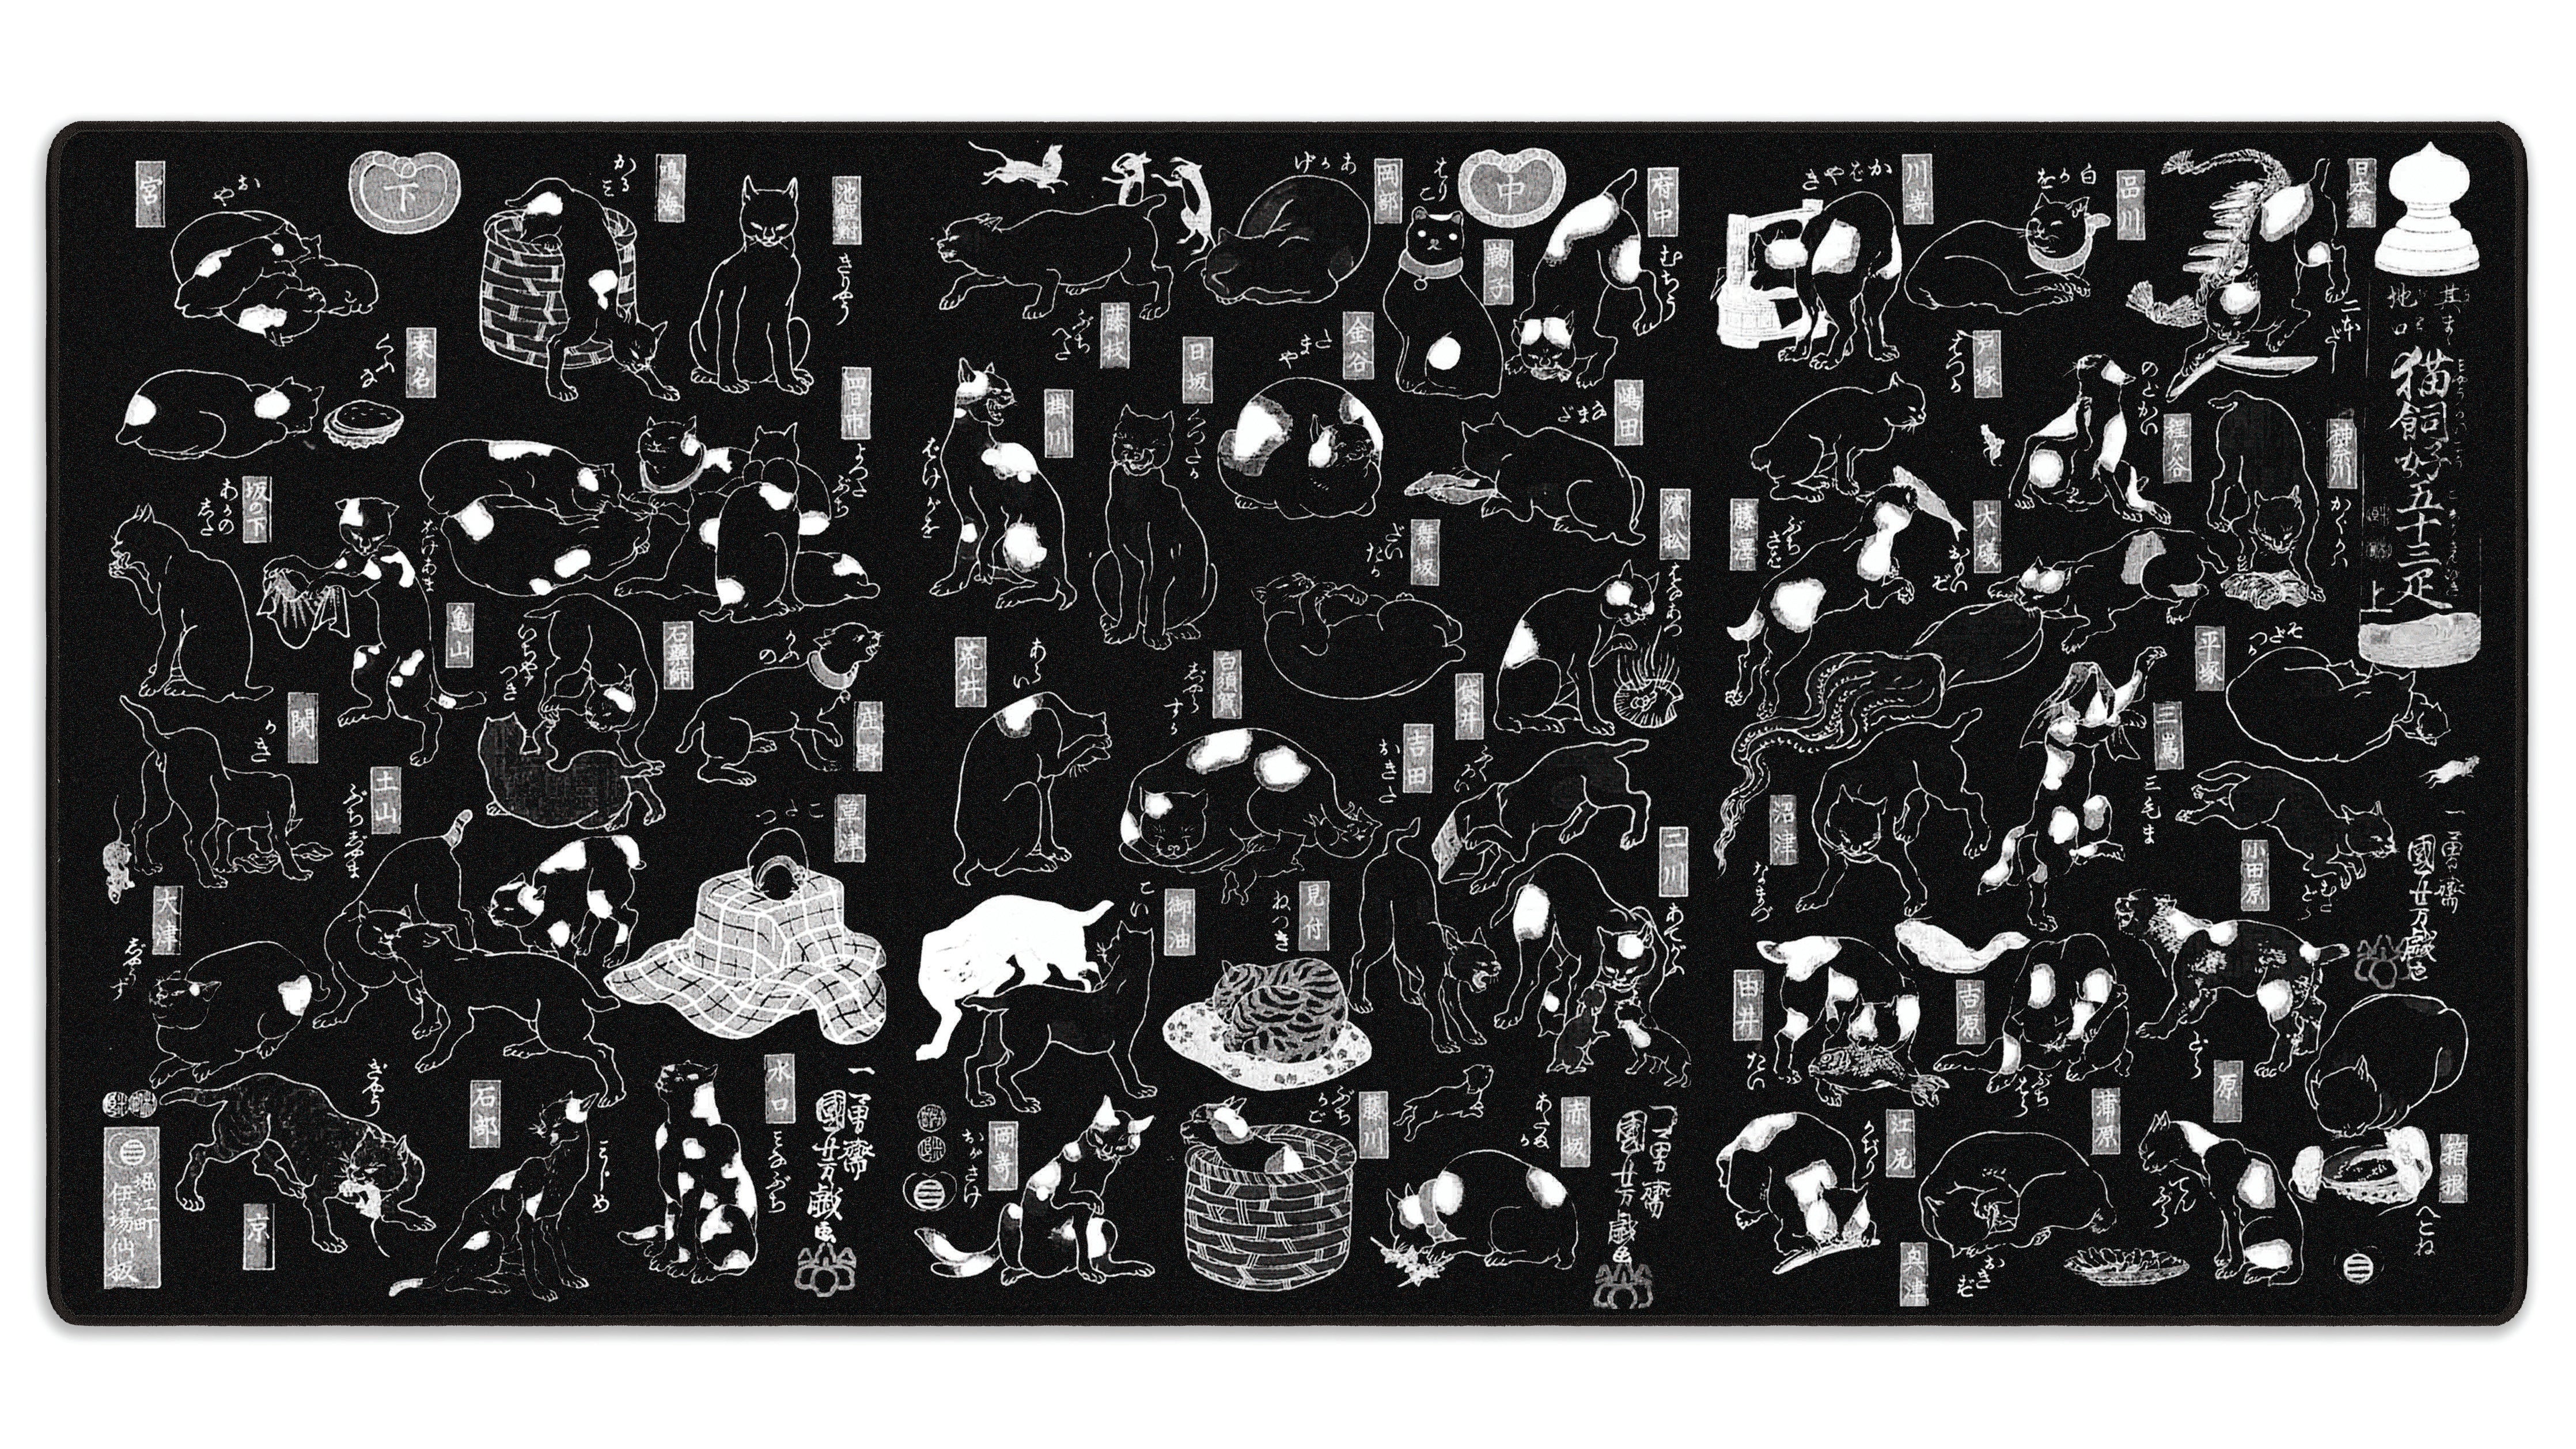 Cats by Kuniyoshi - The Mousepad Company